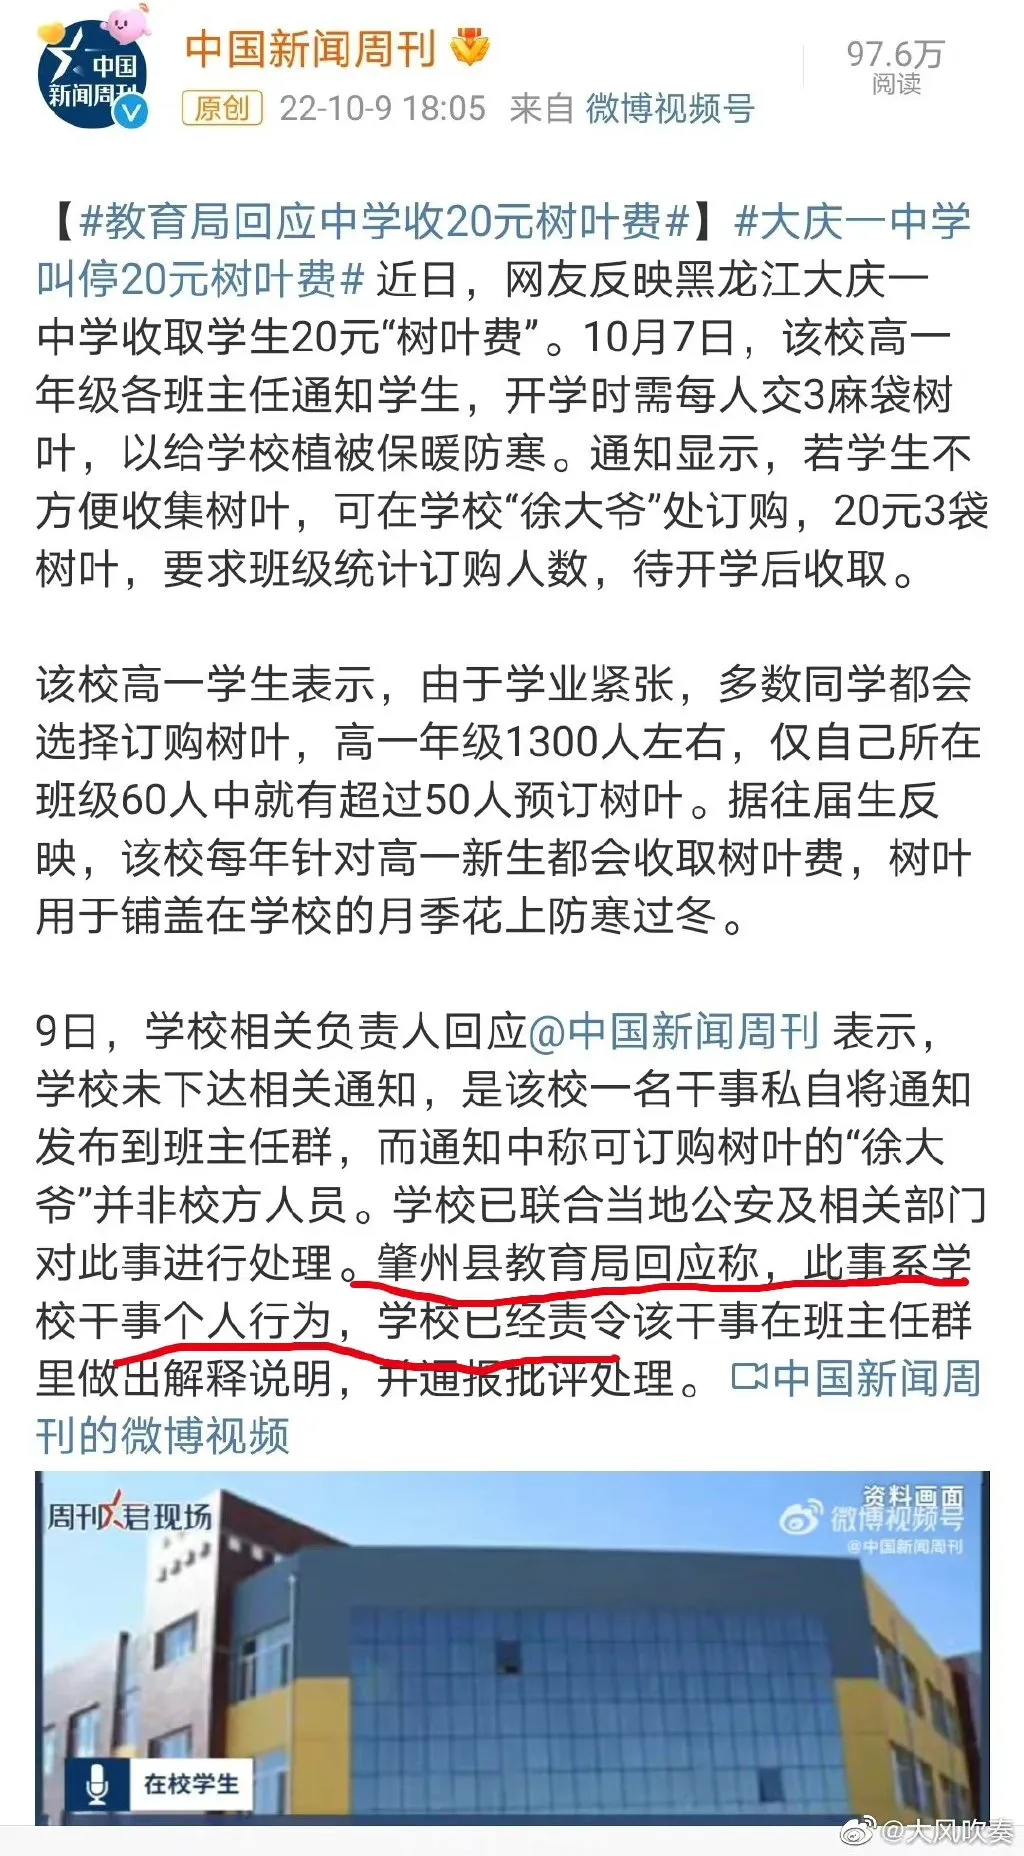 黑龙江大庆一中学收取学生20元“树叶费” 一中学收取学生20元“树叶费”给植被保暖